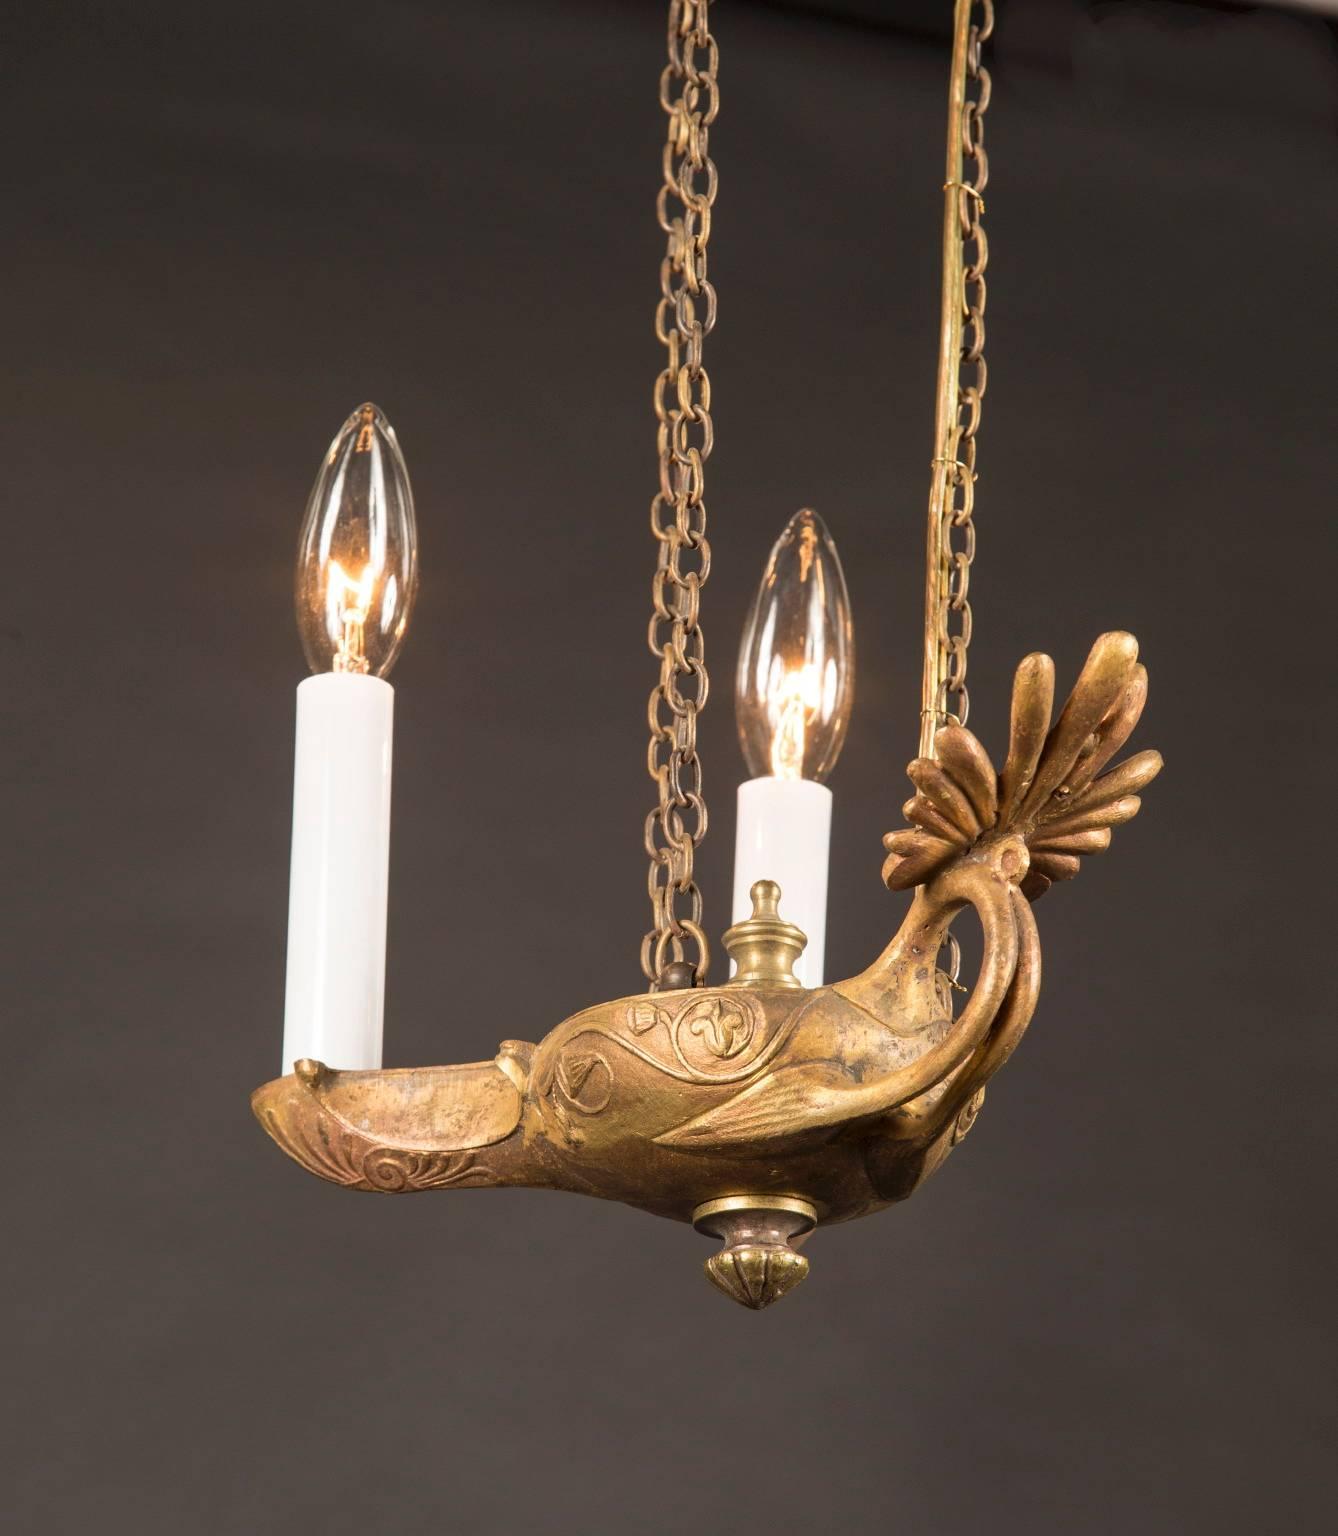 Cette paire de lampes à huile suspendues en bronze français date du 19e siècle et est suspendue à une chaîne lourde magnifiquement élaborée. La couronne ressemble à un soleil de style néo-gothique et se connecte à la lampe en trois positions. La